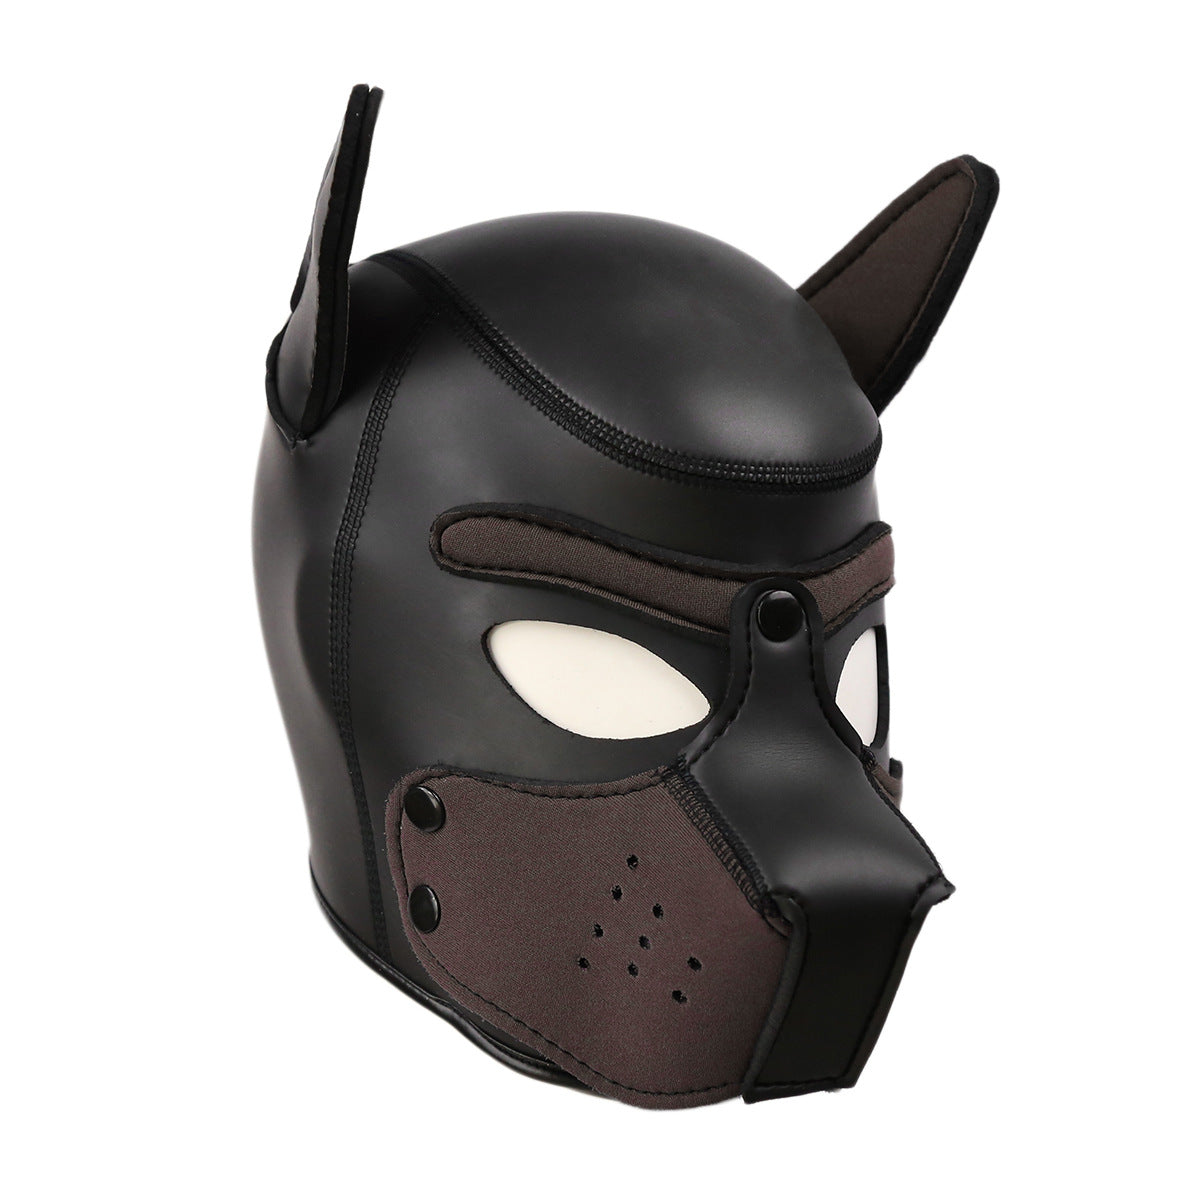 CR Rubber Dog Headgear